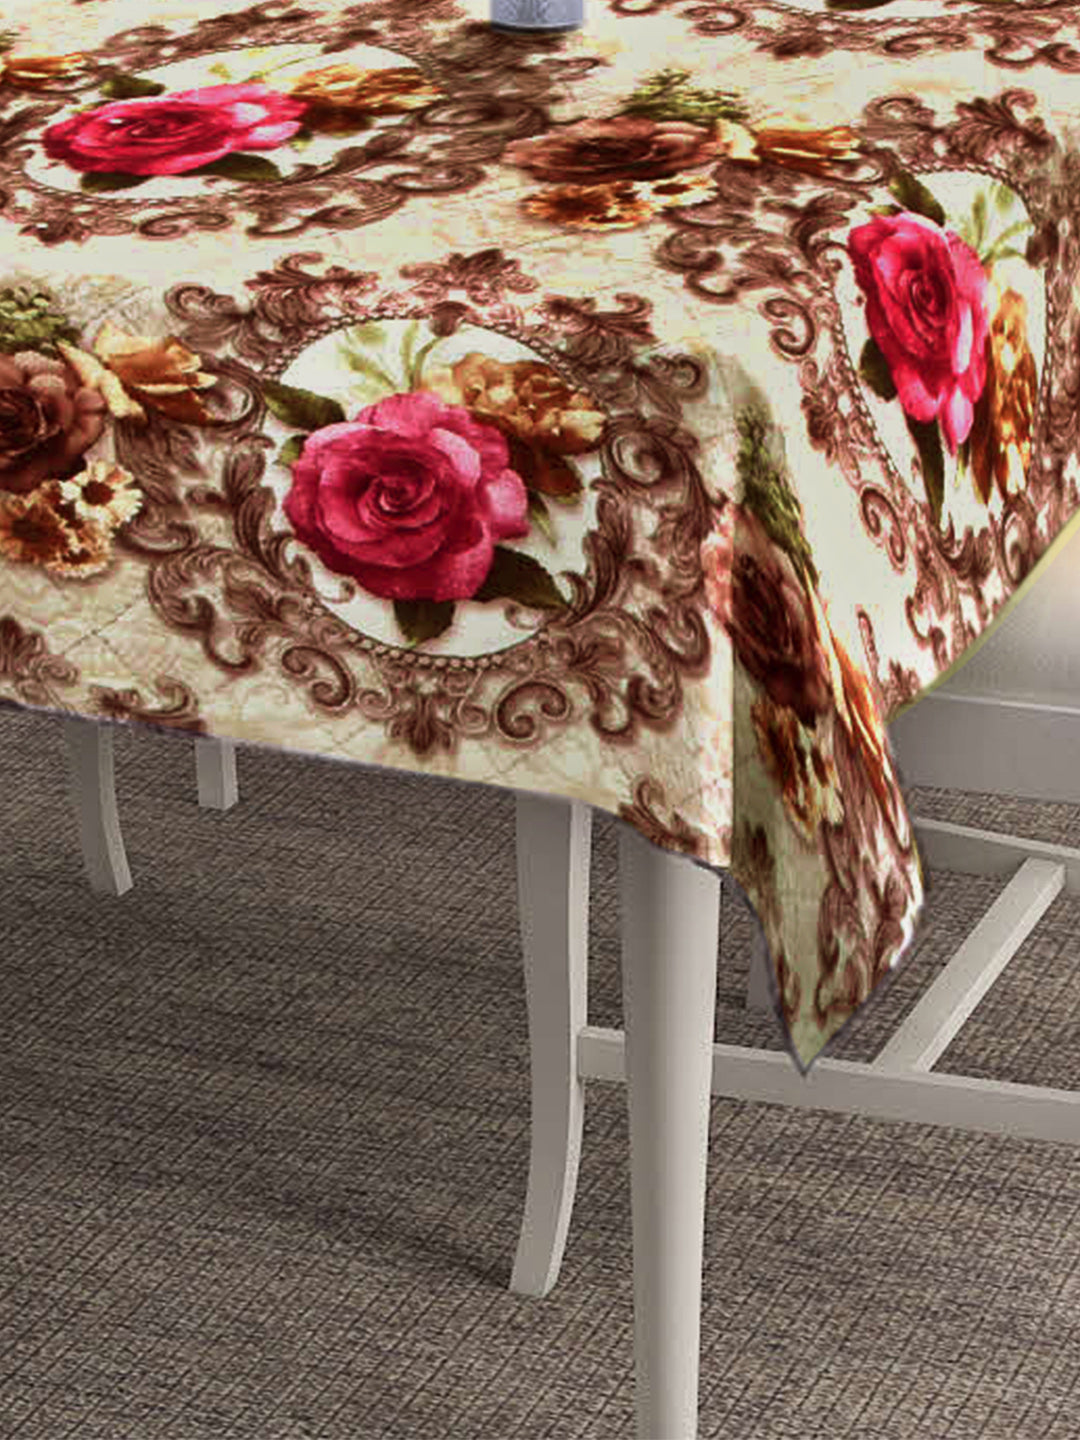 Arrabi Brown Floral TC Cotton Blend 6 Seater Table Cover (180 x 130 cm)